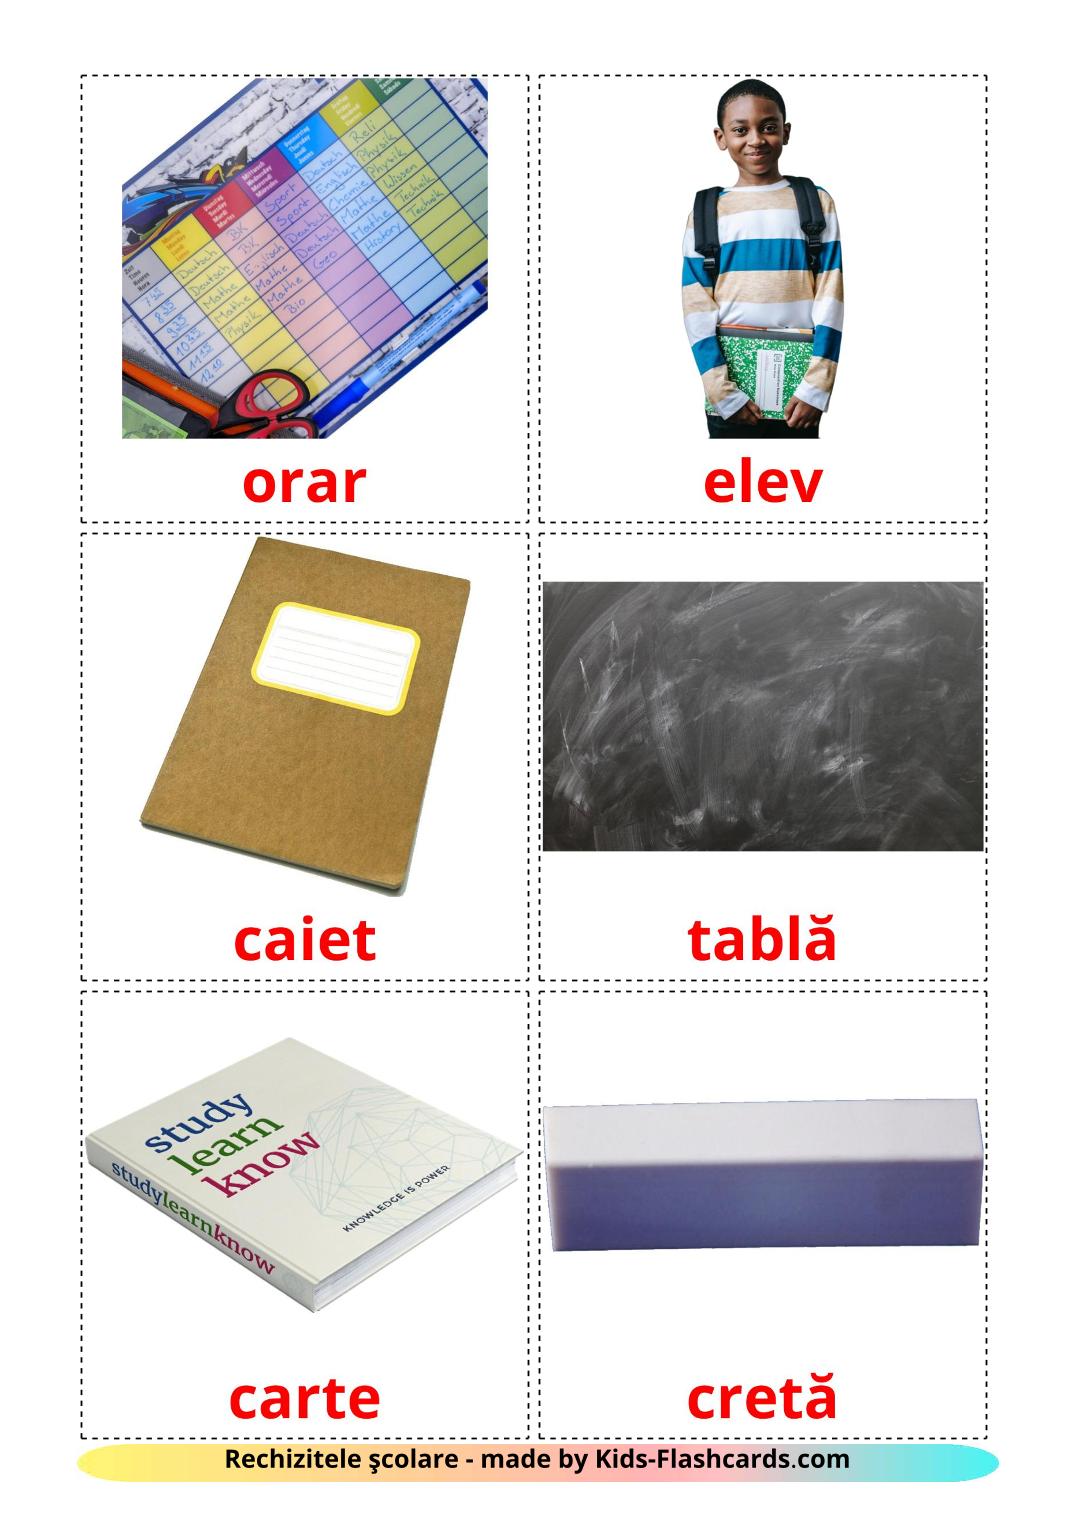 Objetos de sala de aula - 36 Flashcards romenoes gratuitos para impressão